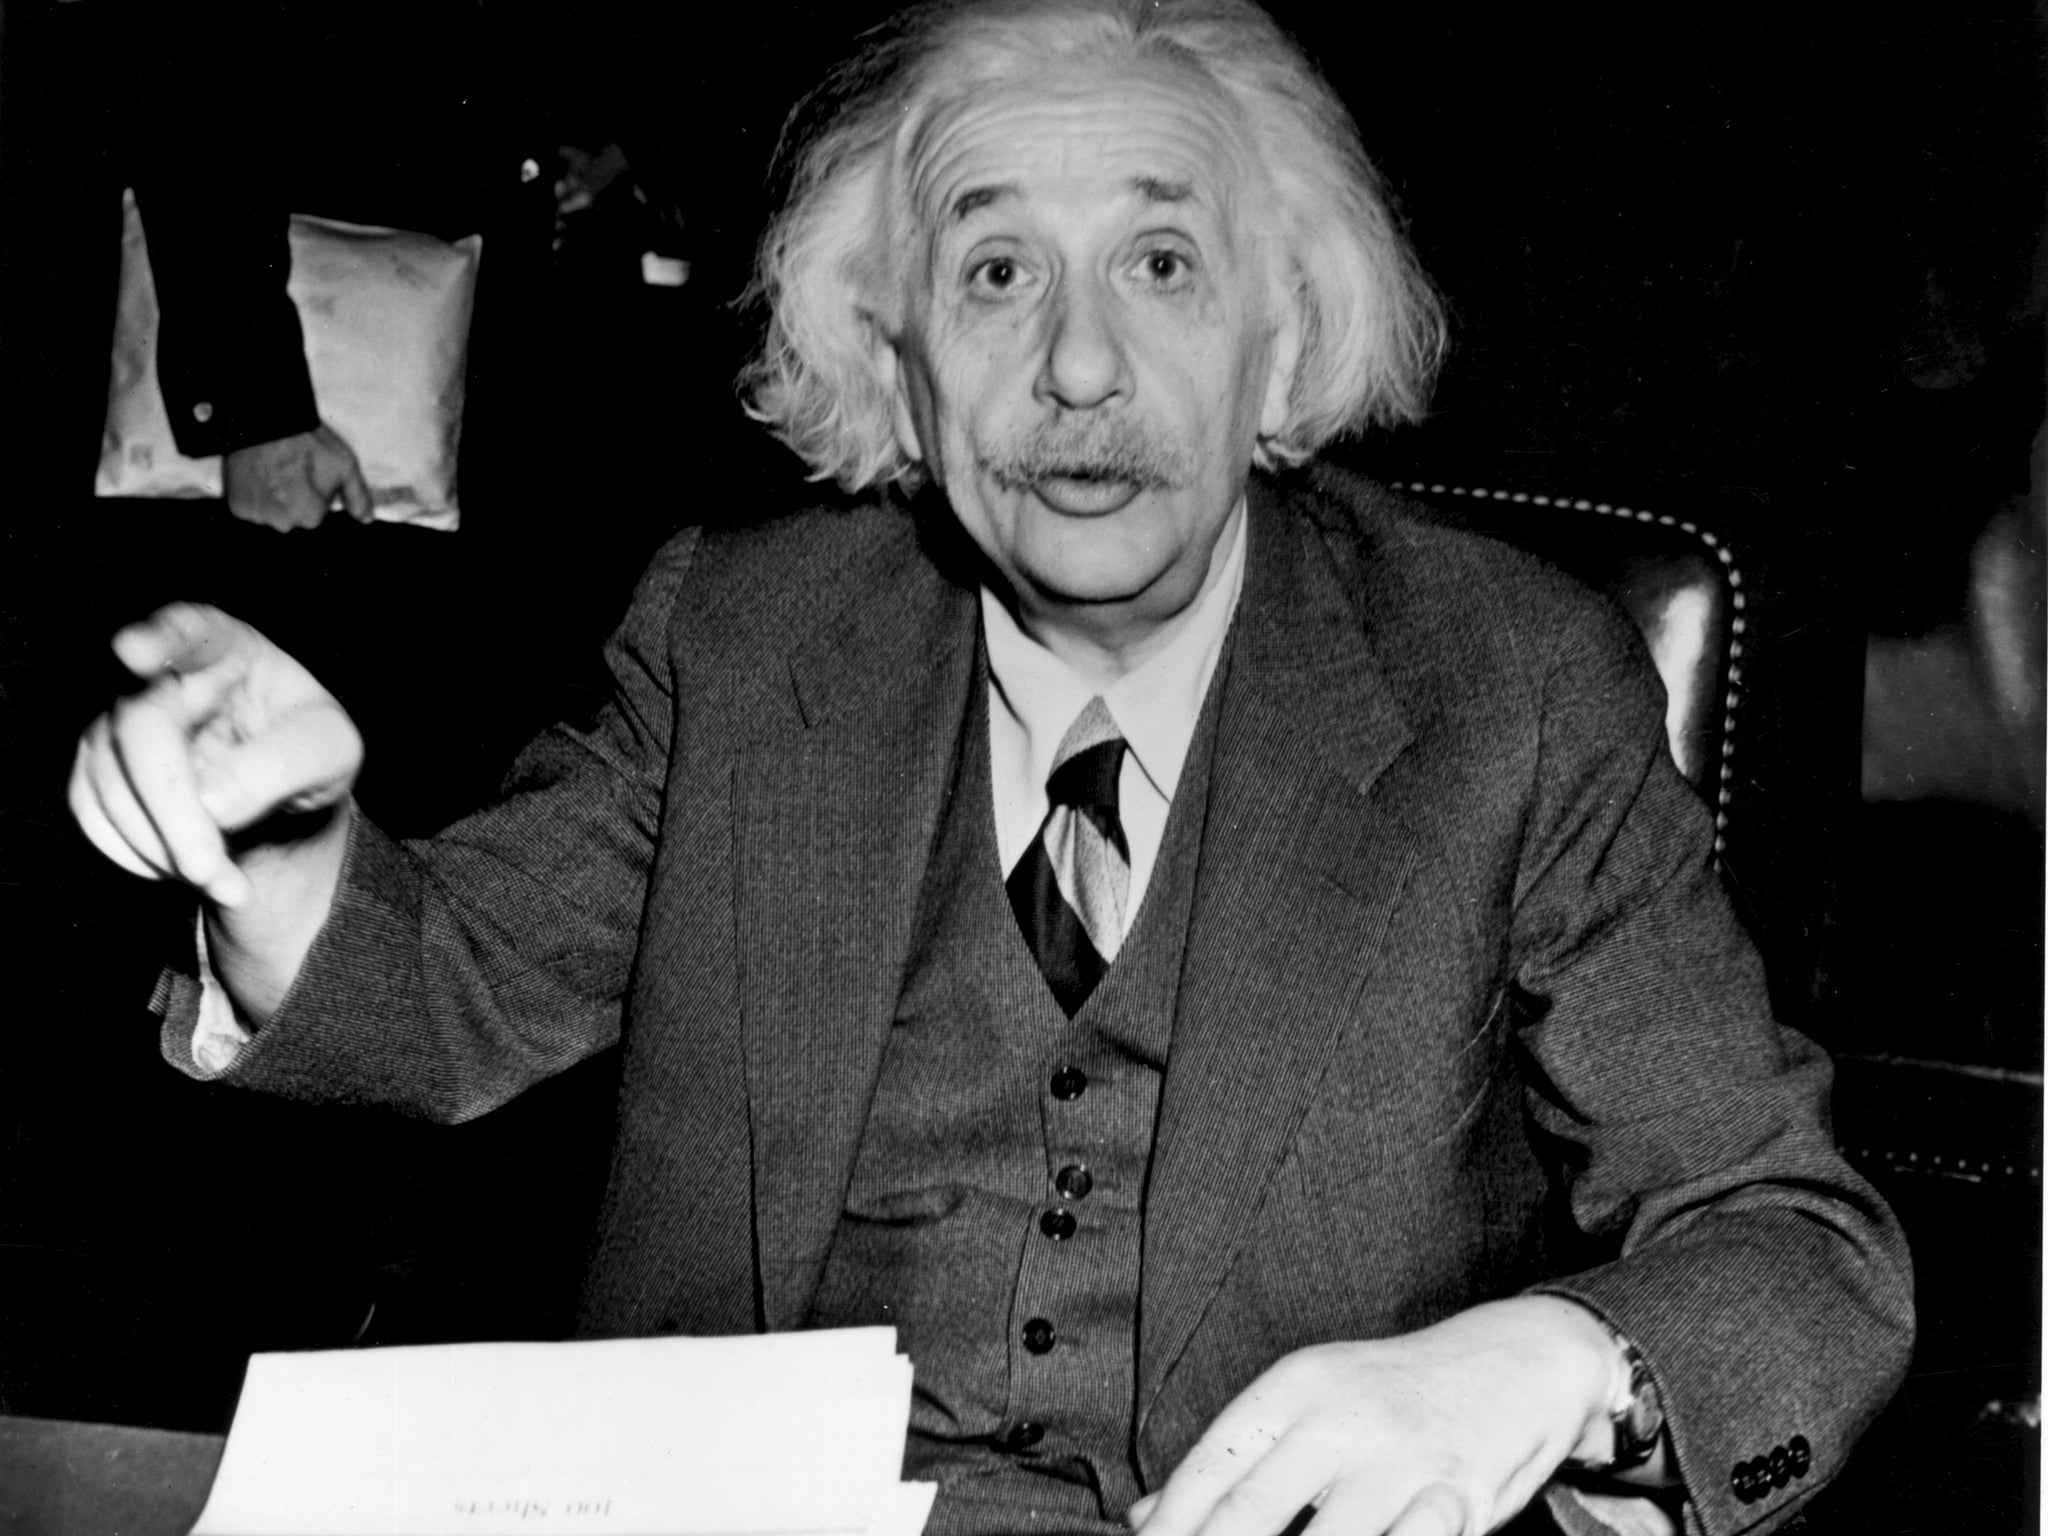 Albert Einstein was a German-Jewish refugee who escaped Nazi Germany